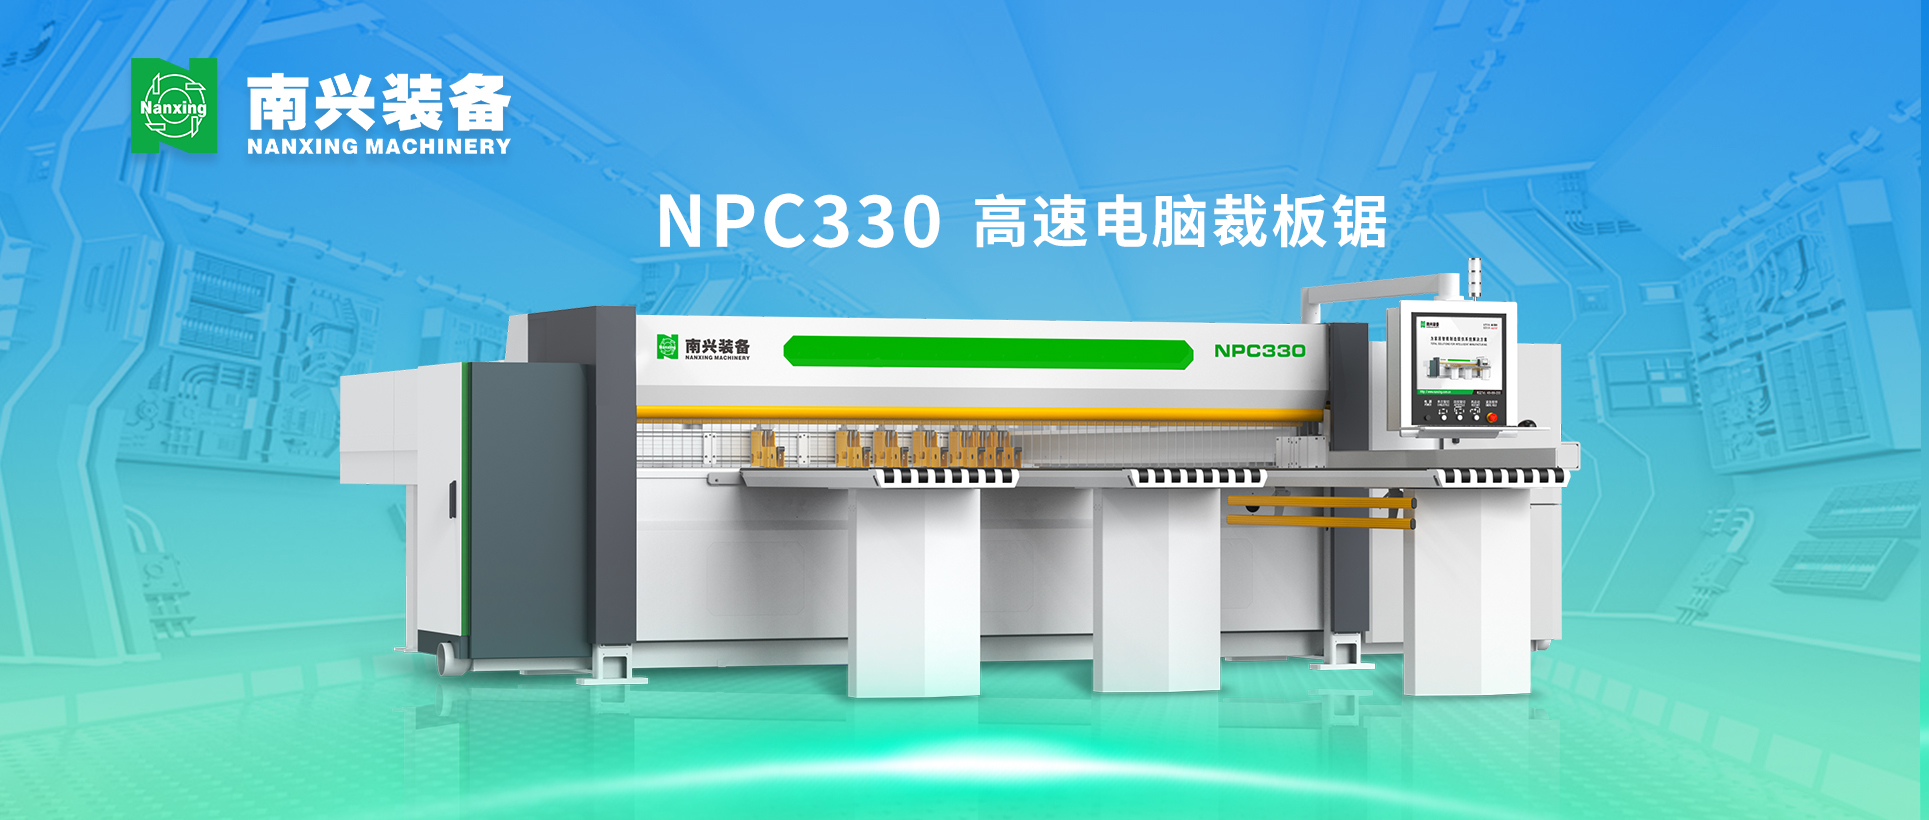 高效稳定 精密裁切 | NPC330 高速电脑裁板锯